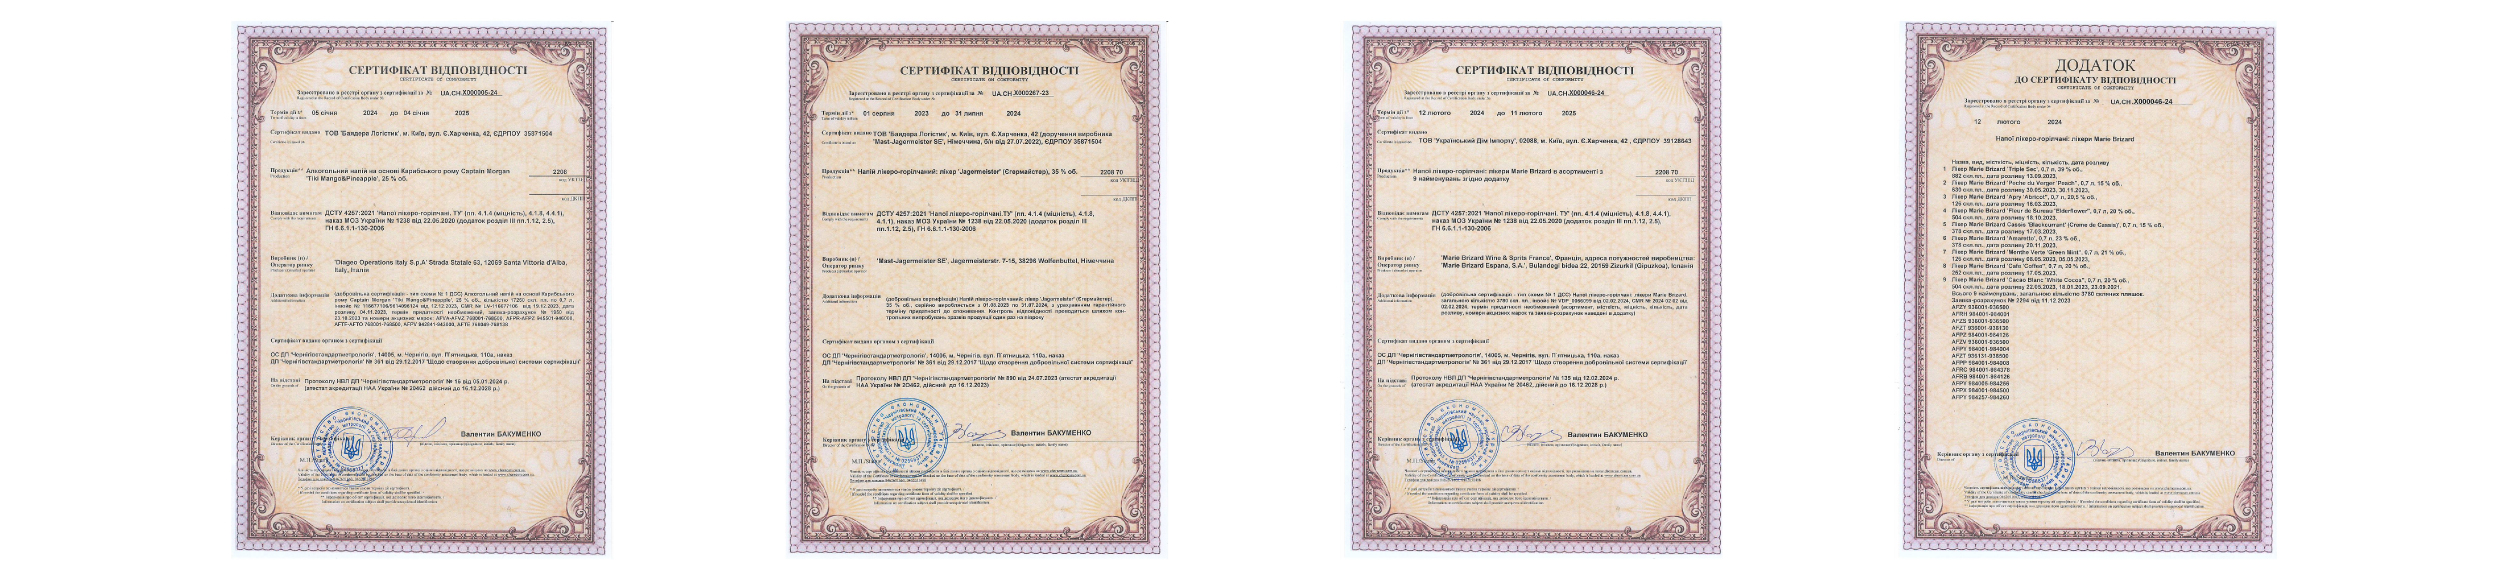 Сертифікат відповідності продукції